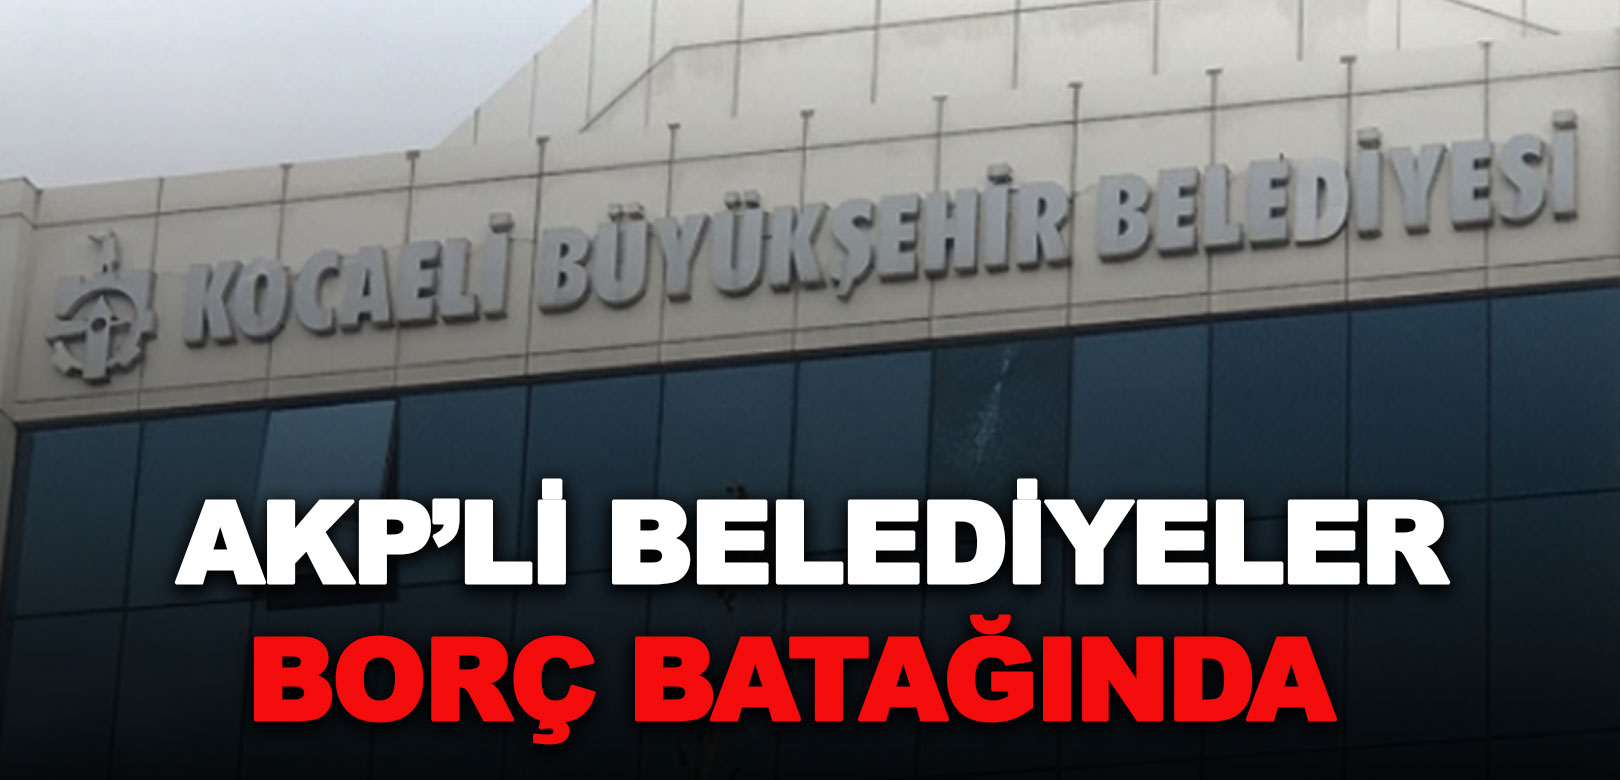 Hazine ve Maliye Bakanlığı verilerine göre AKP'li belediyeler borç batağında